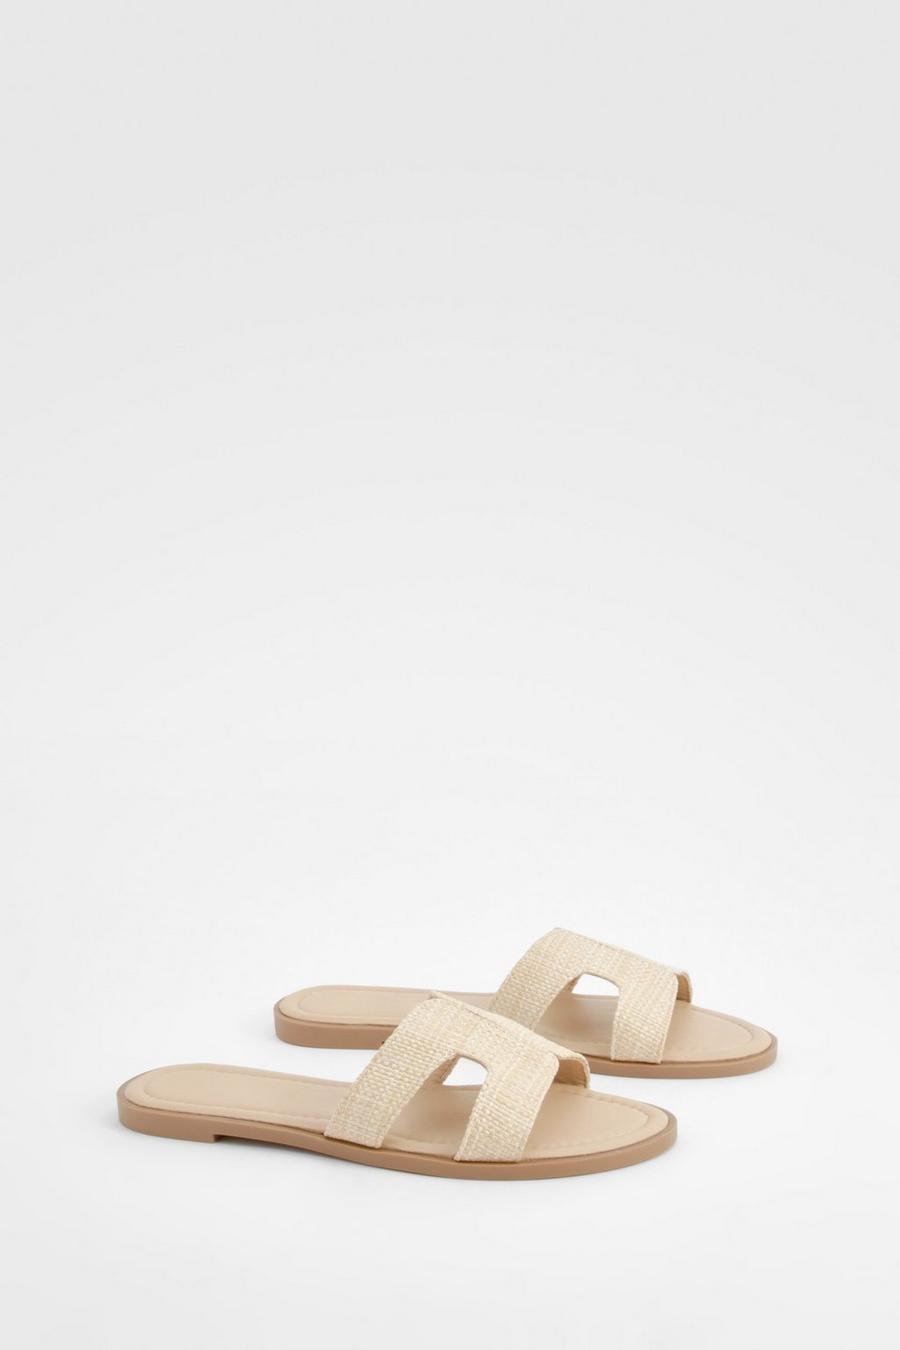 Bast-Sandalen mit doppelten Riemchen, Nude